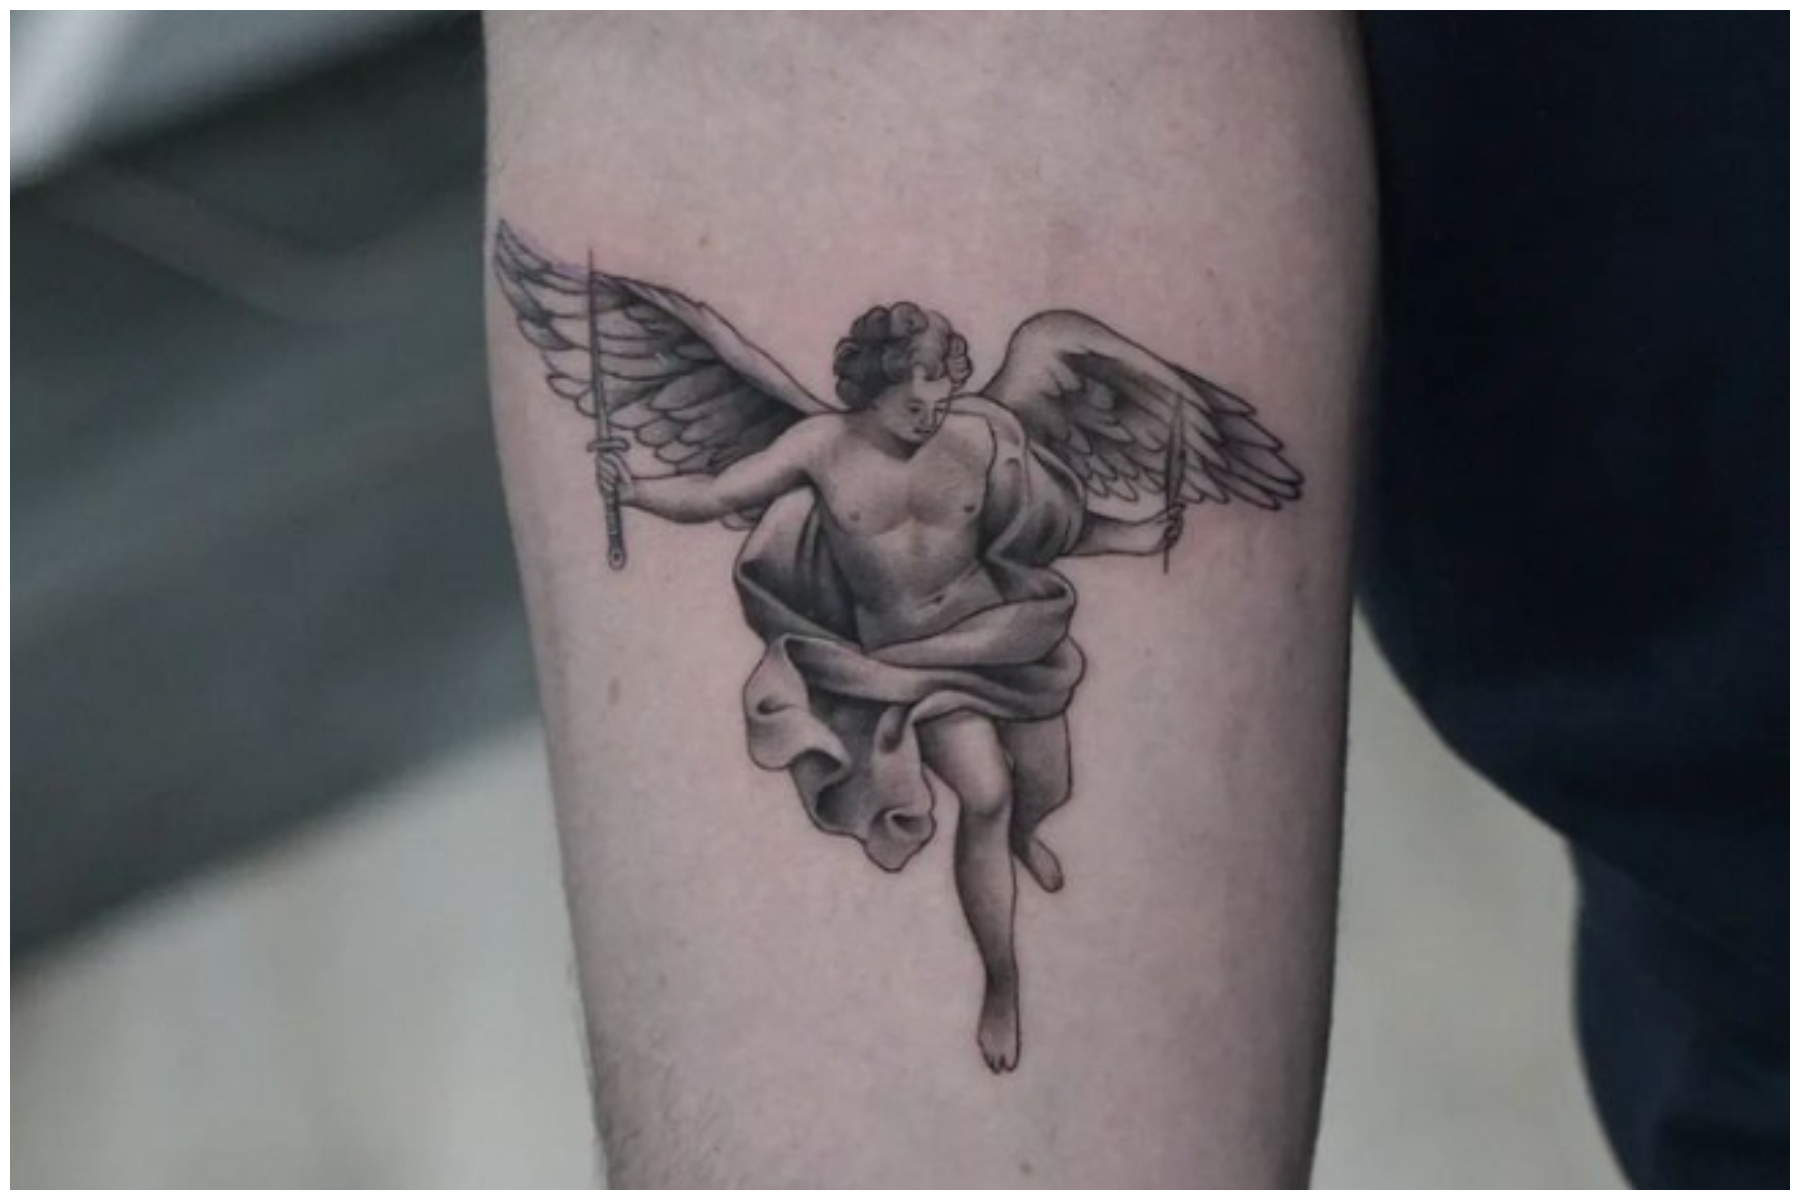 small-angel-wings-tattoo-wrist-tattoo-green-bushes-in-the-background | Tiny  tattoos, Minimalist tattoo, Tattoos for women small